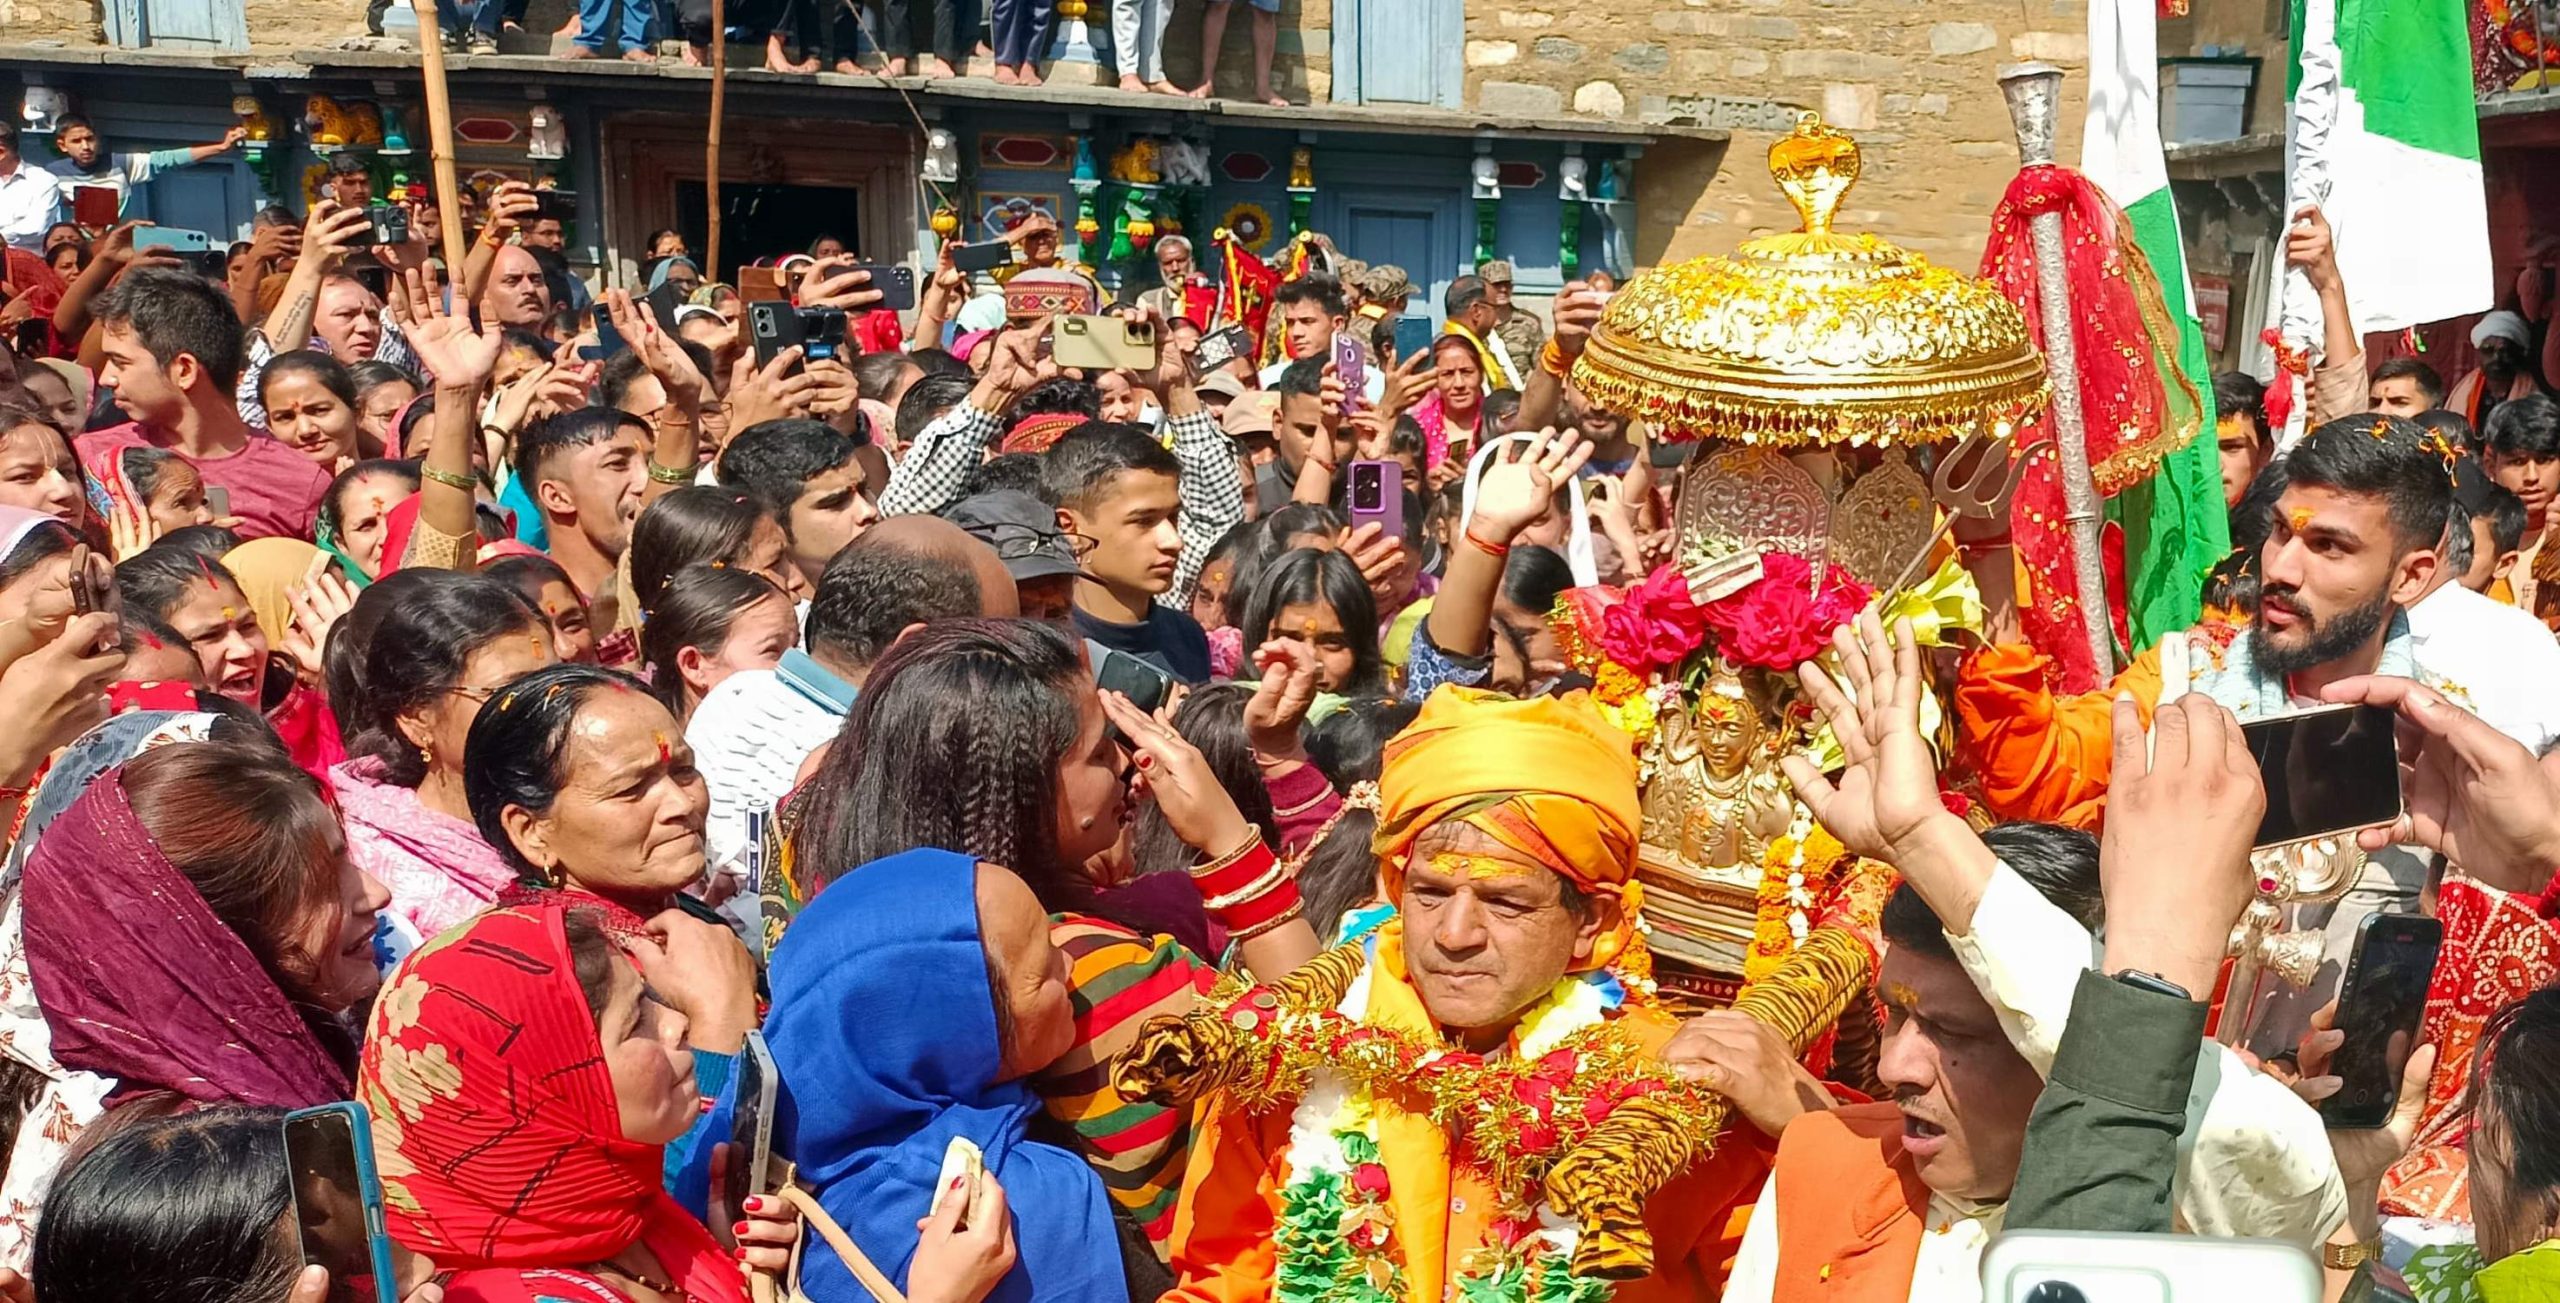 गोपीनाथ मंदिर से ग्रीष्मकालीन प्रवास के लिये रवाना हुई भगवान रुद्रनाथ की उत्सव डोली: 18 मई को ग्रीष्मकाल के लिए खुलेंगे भगवान रुद्रनाथ मंदिर के कपाट